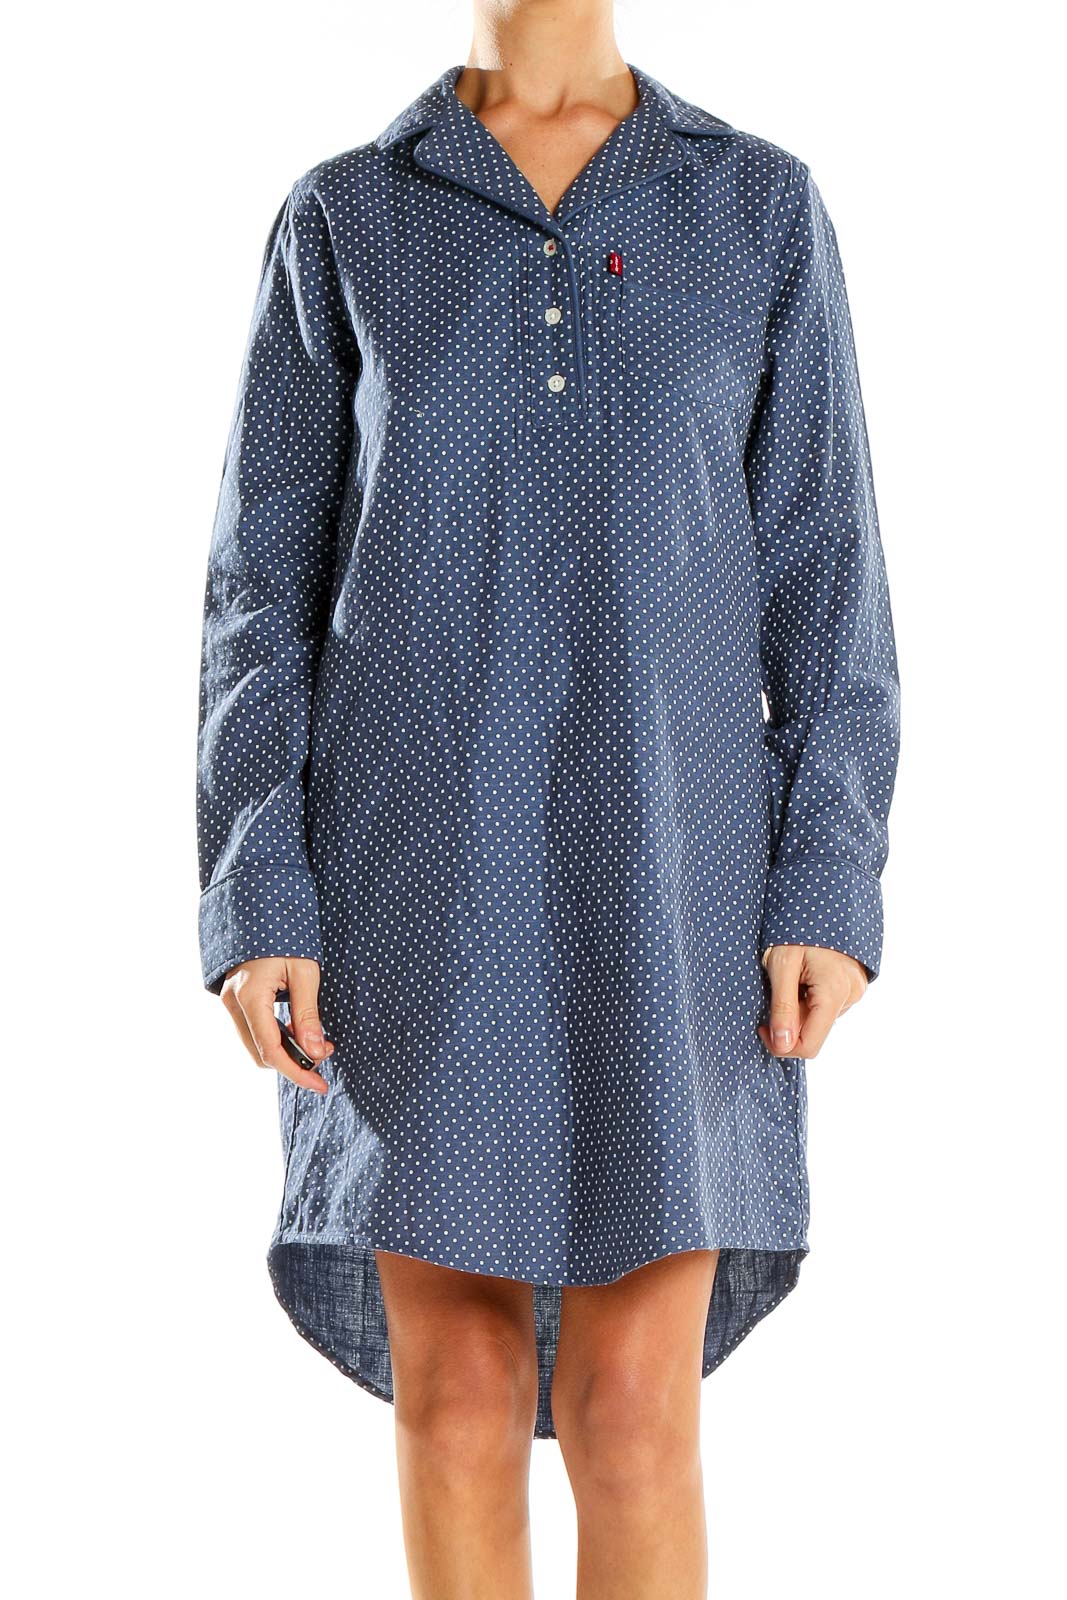 Blue Polka Dot Shirt Dress Front